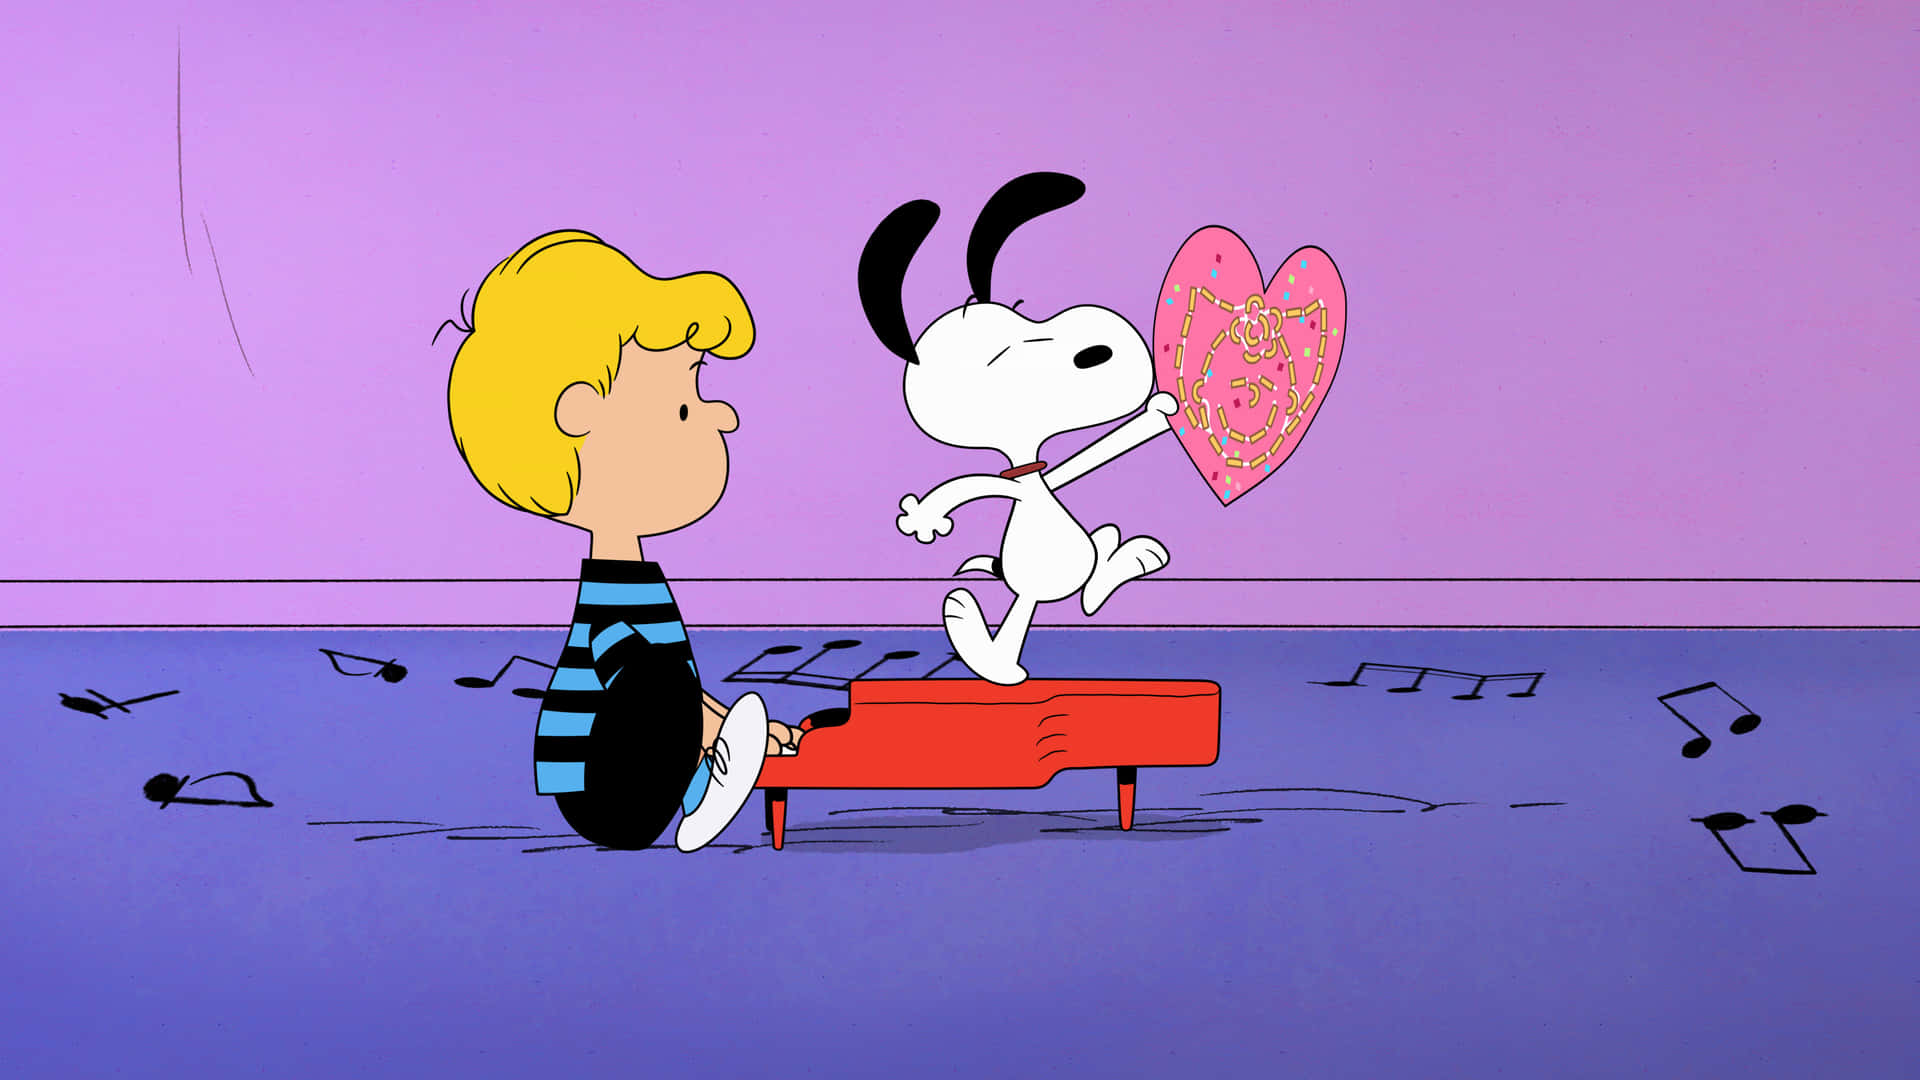 Snoopy,il Adorato Cane Della Striscia A Fumetti Peanuts Di Charles Schulz.